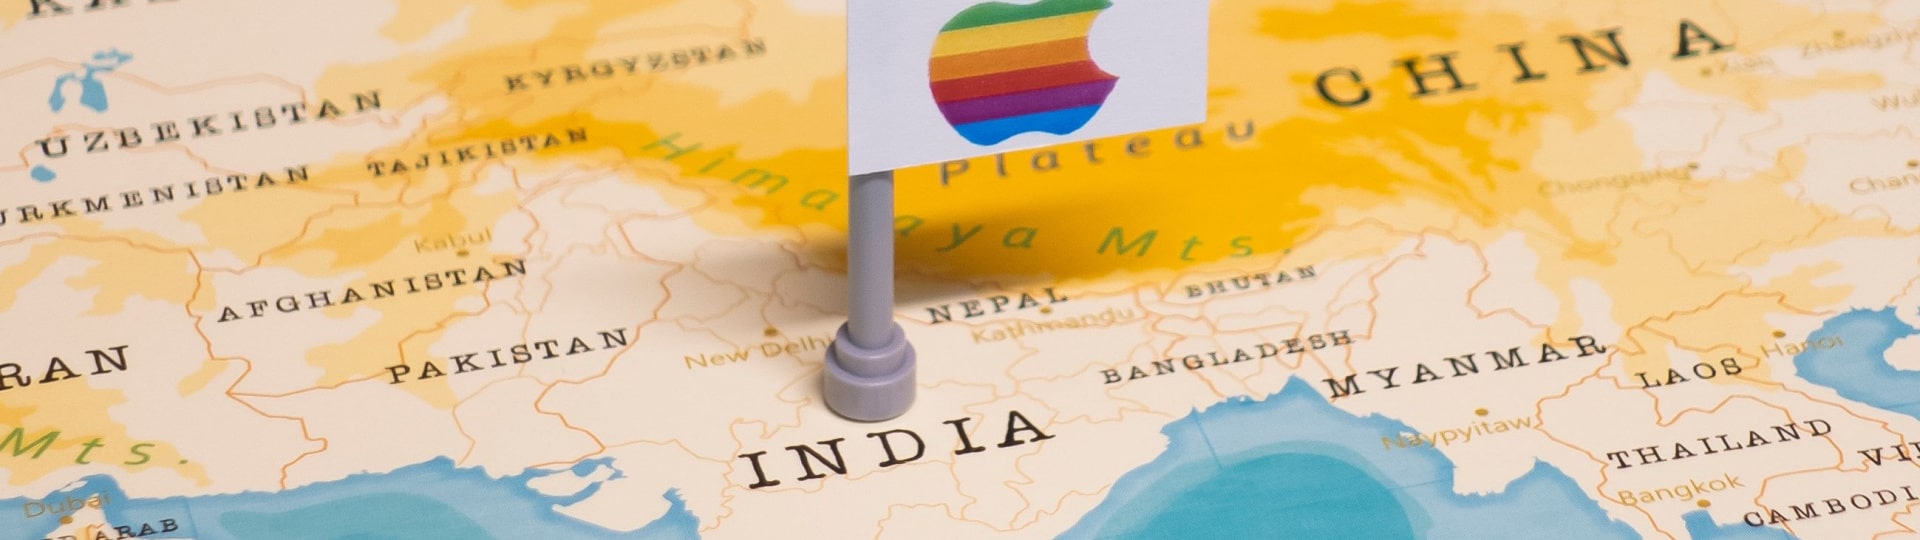 Výrobce iPhonů plánuje novou továrnu v Indii za 700 milionů USD